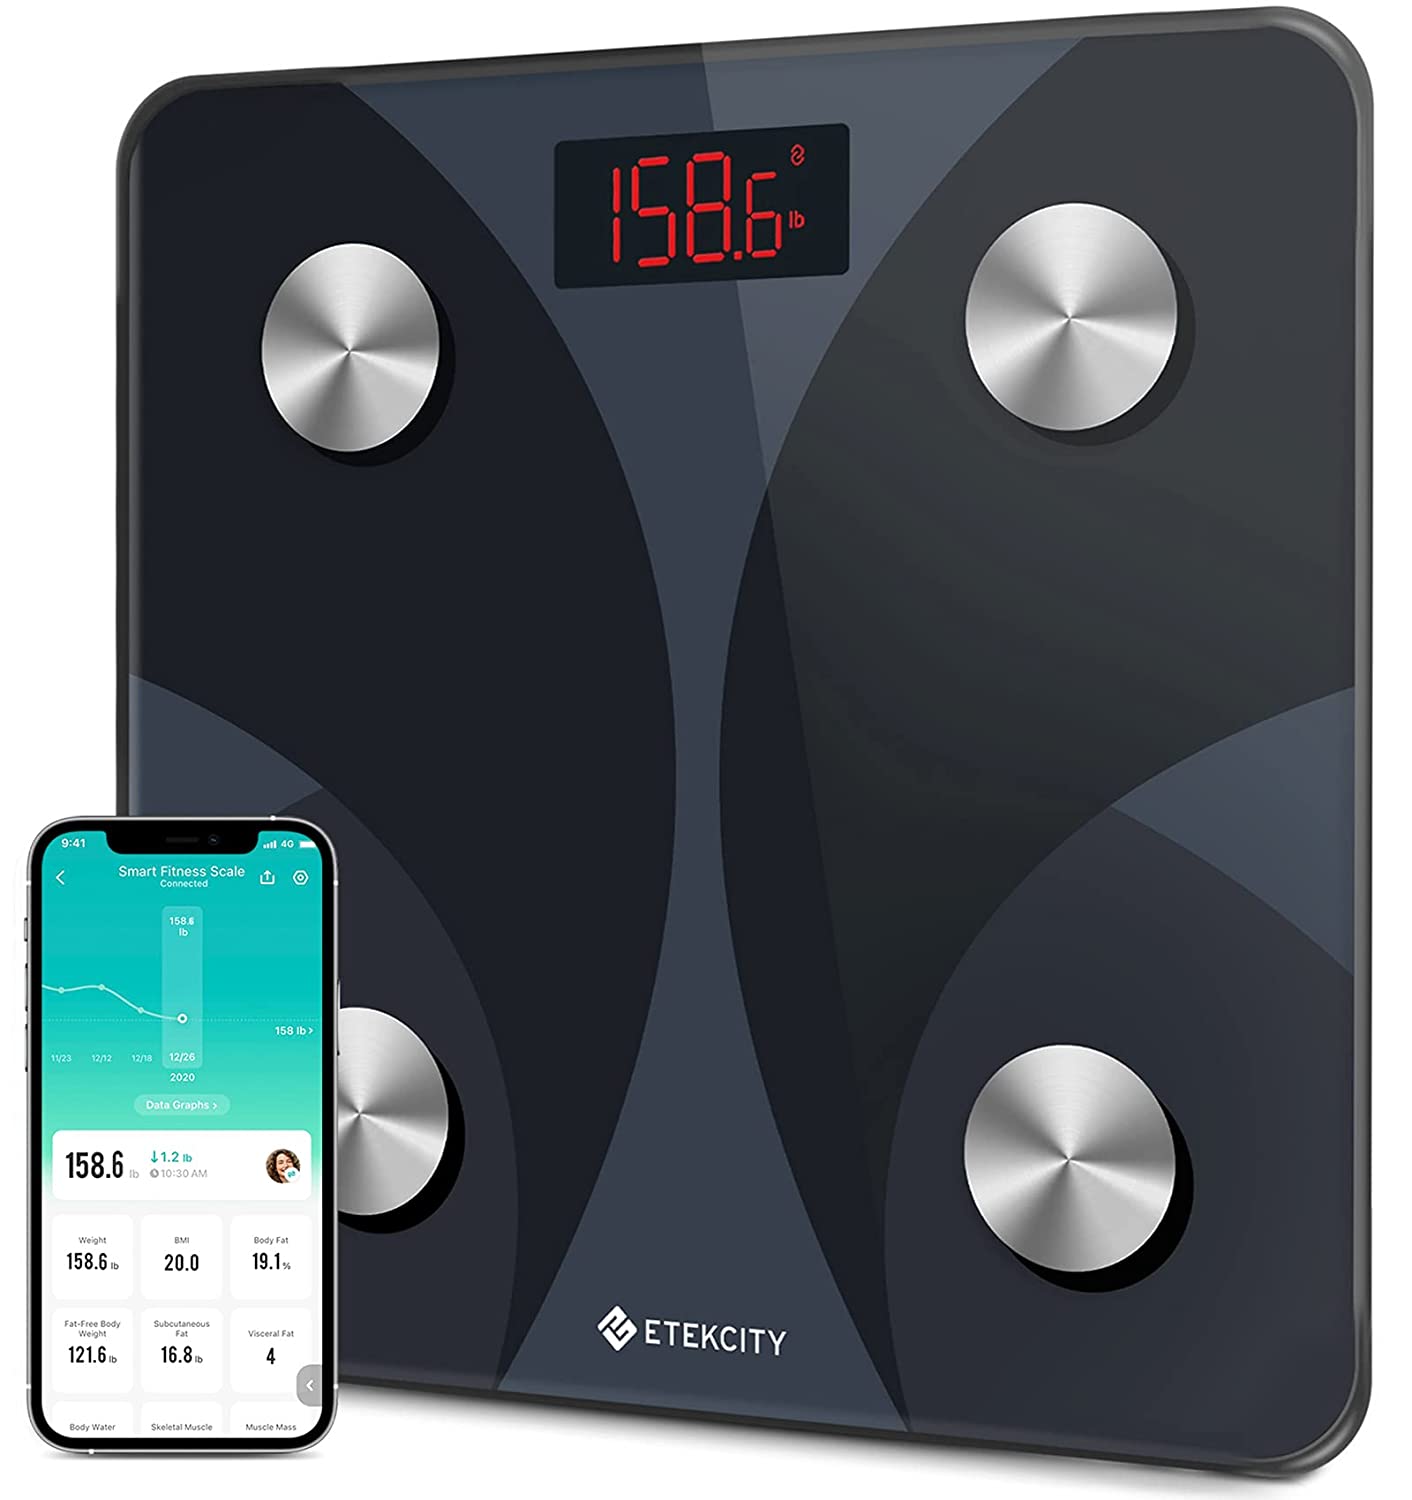 Etekcity Smart Digital Bathroom Weighing Scale $16.98 @Amazon